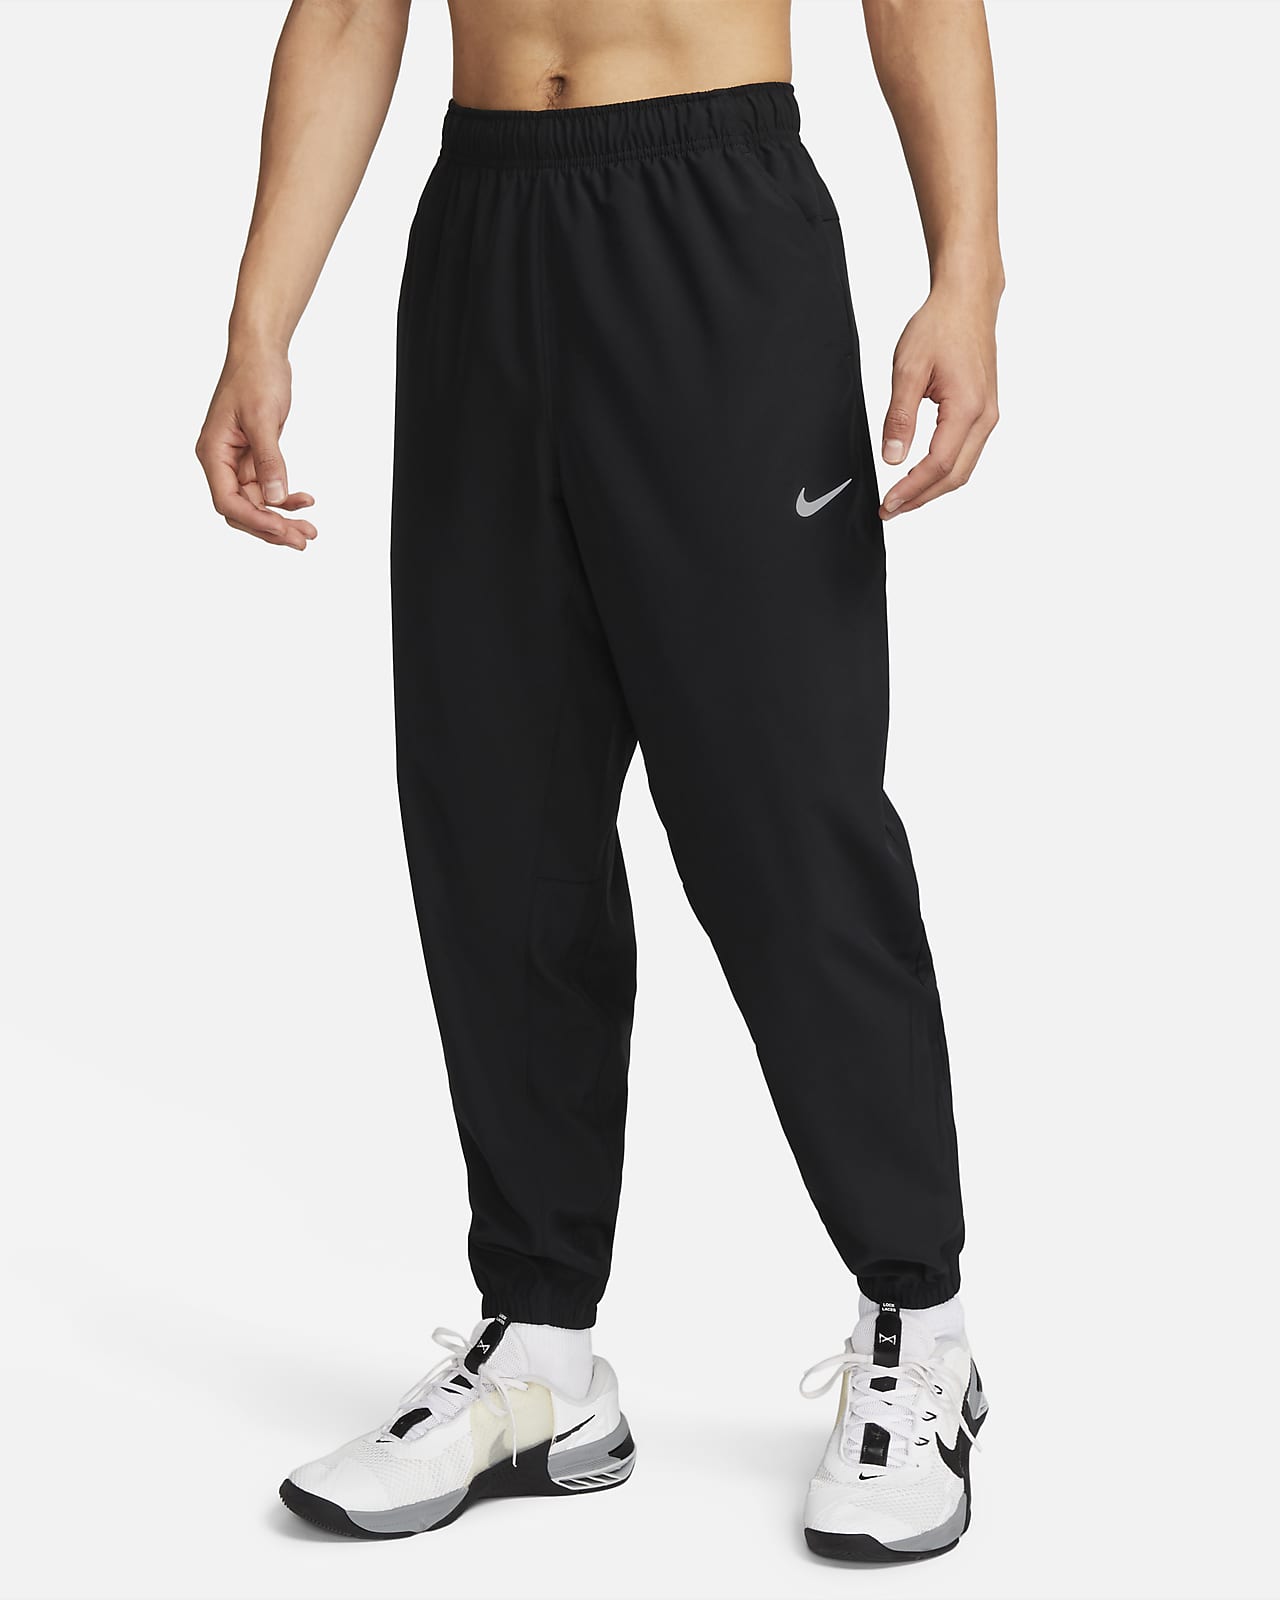 Nike Form vielseitige Hose mit schmal zulaufender Passform und für Herren